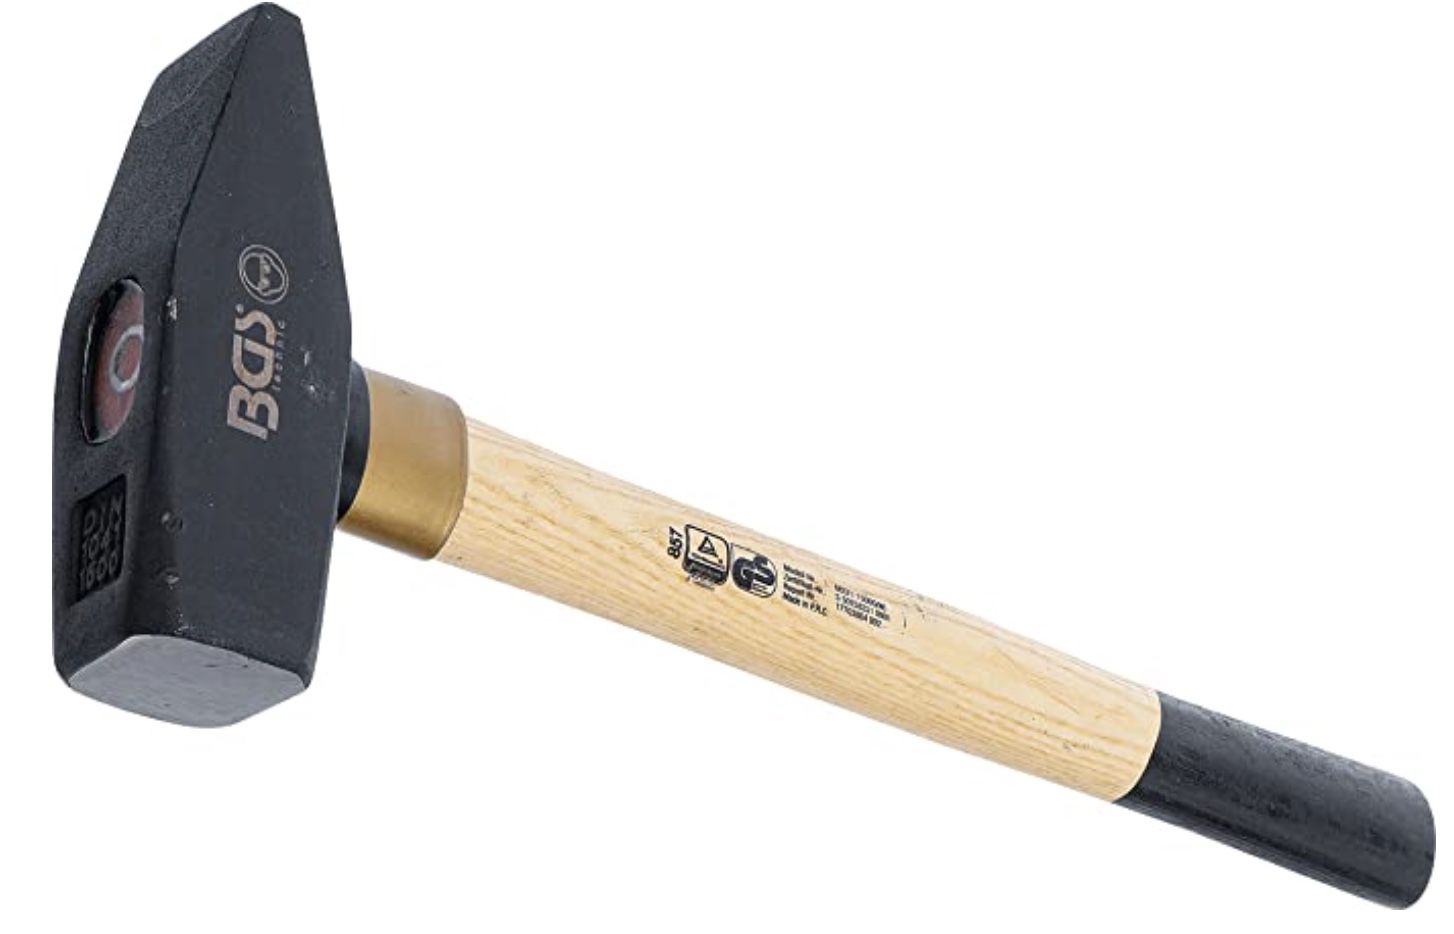 BGS 857 Schlosserhammer mit Holz Stiel nach DIN 1041 für 14€ (statt 18€)   Prime